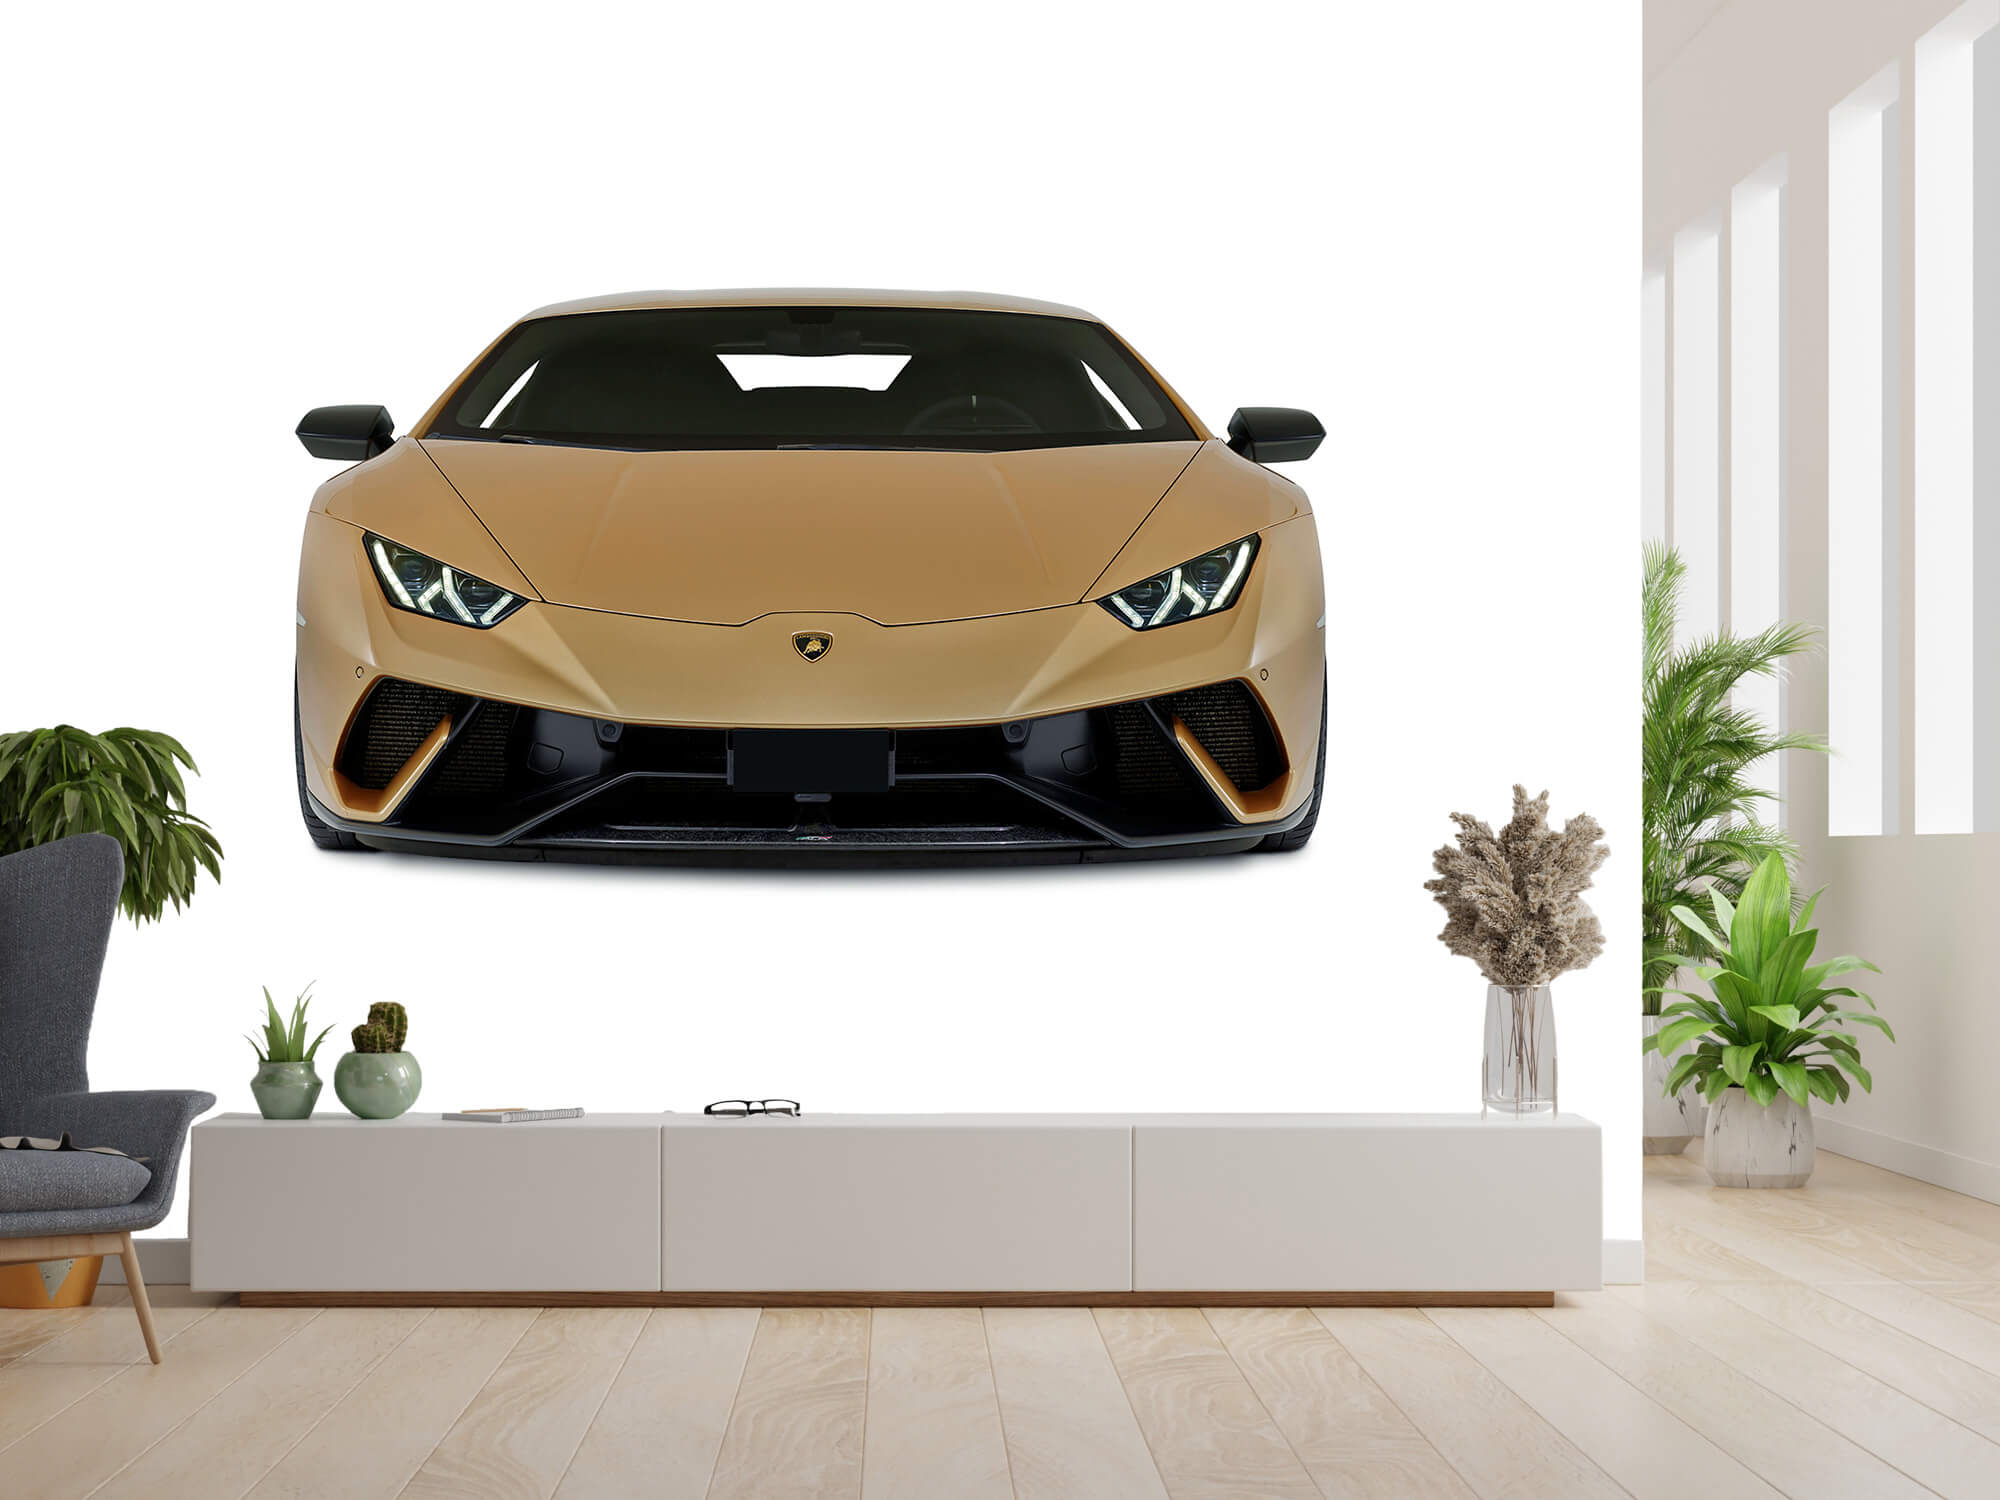 Empapelado Papel pintado con Lamborghini Huracán - frontal, blanco - Habitación de niño 13